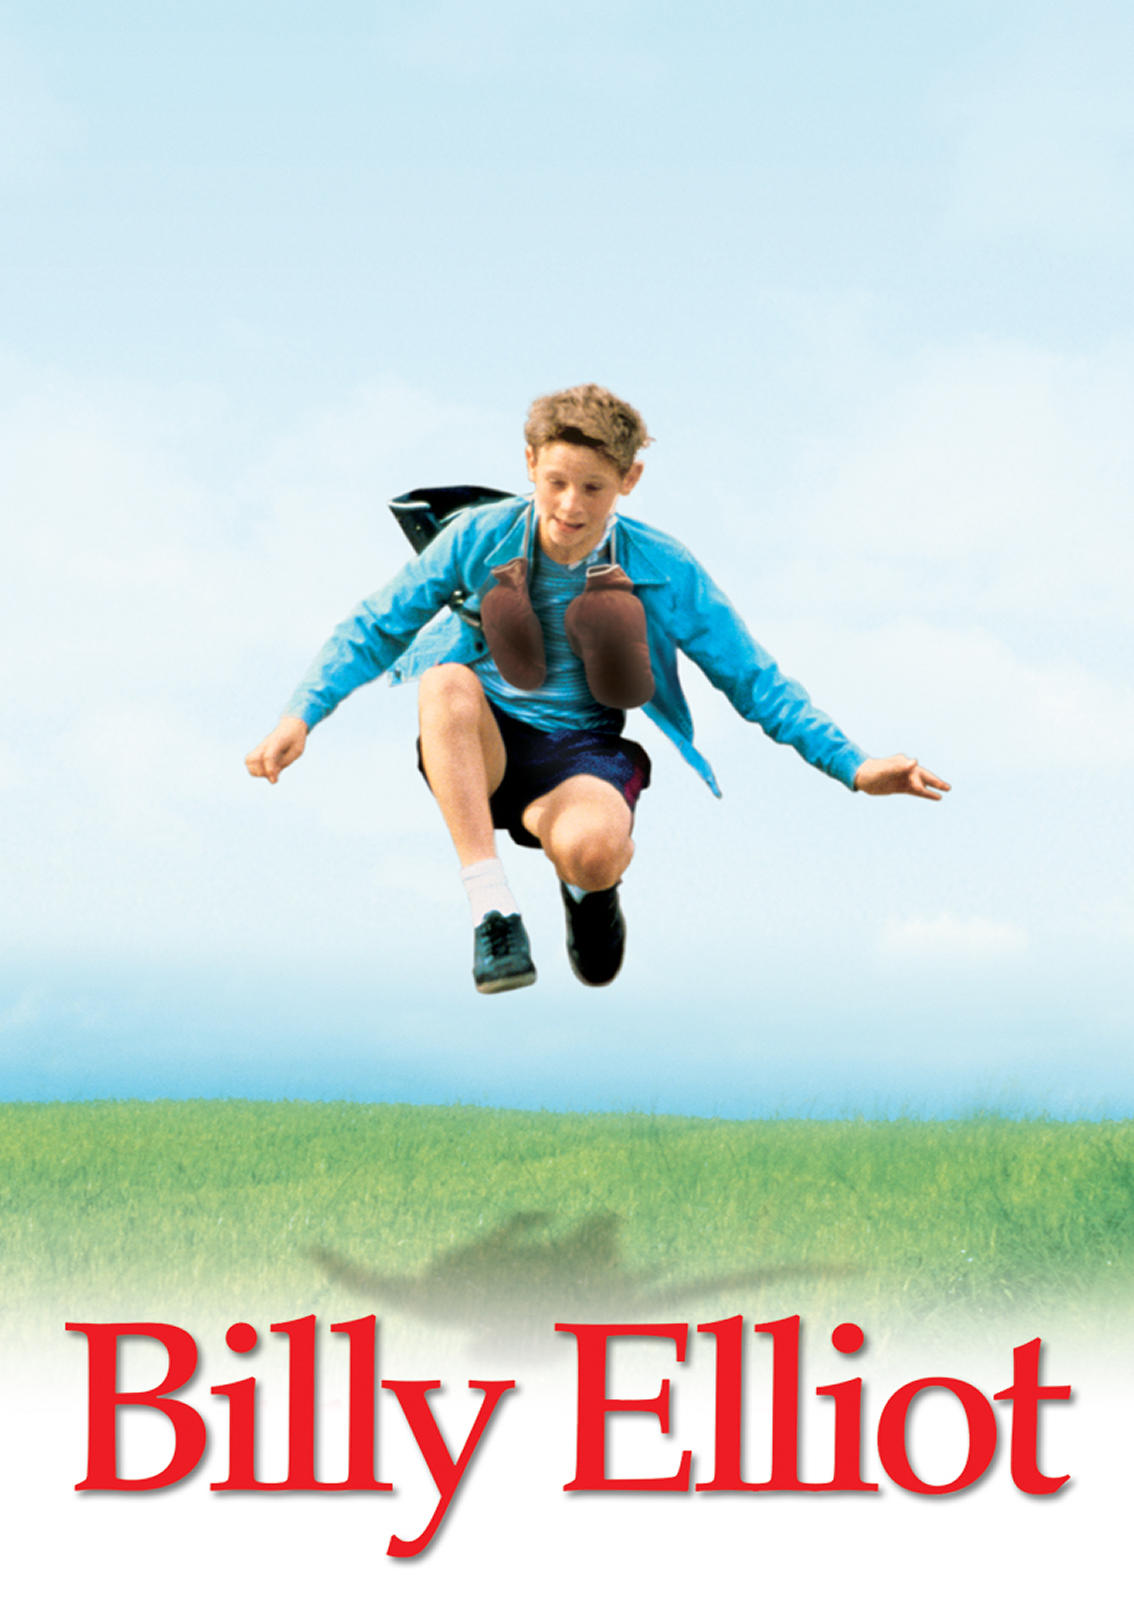 2000 Billy Elliot